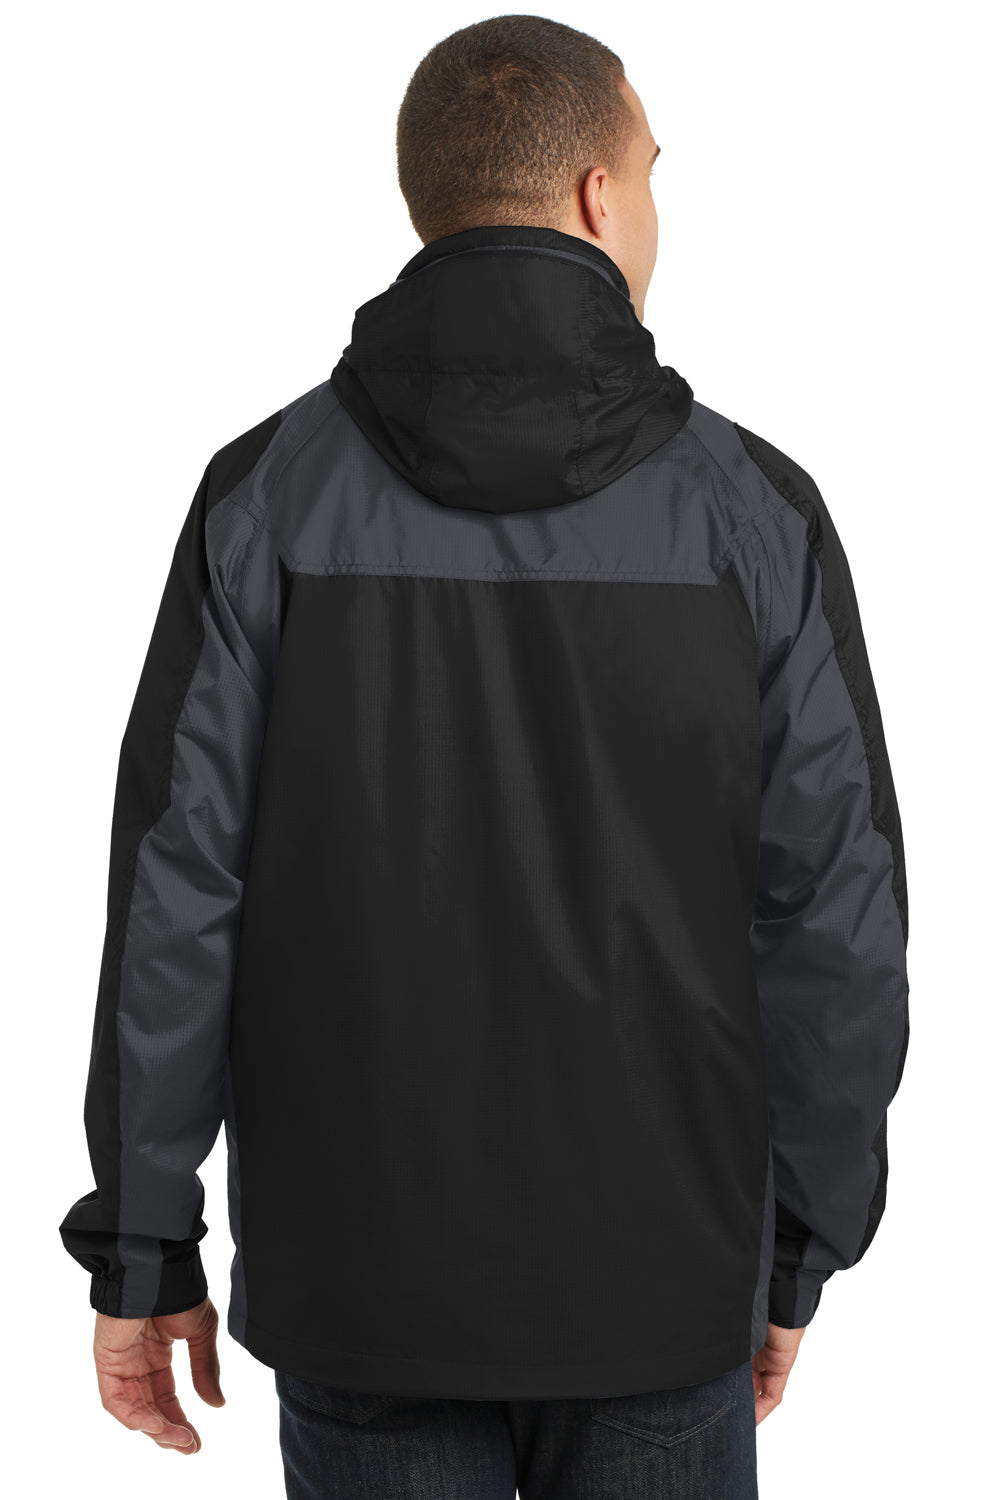 Port Authority J310 Mens Ranger 3-in-1 Waterproof Full Zip Hooded Jacket Black/Ink Grey Back